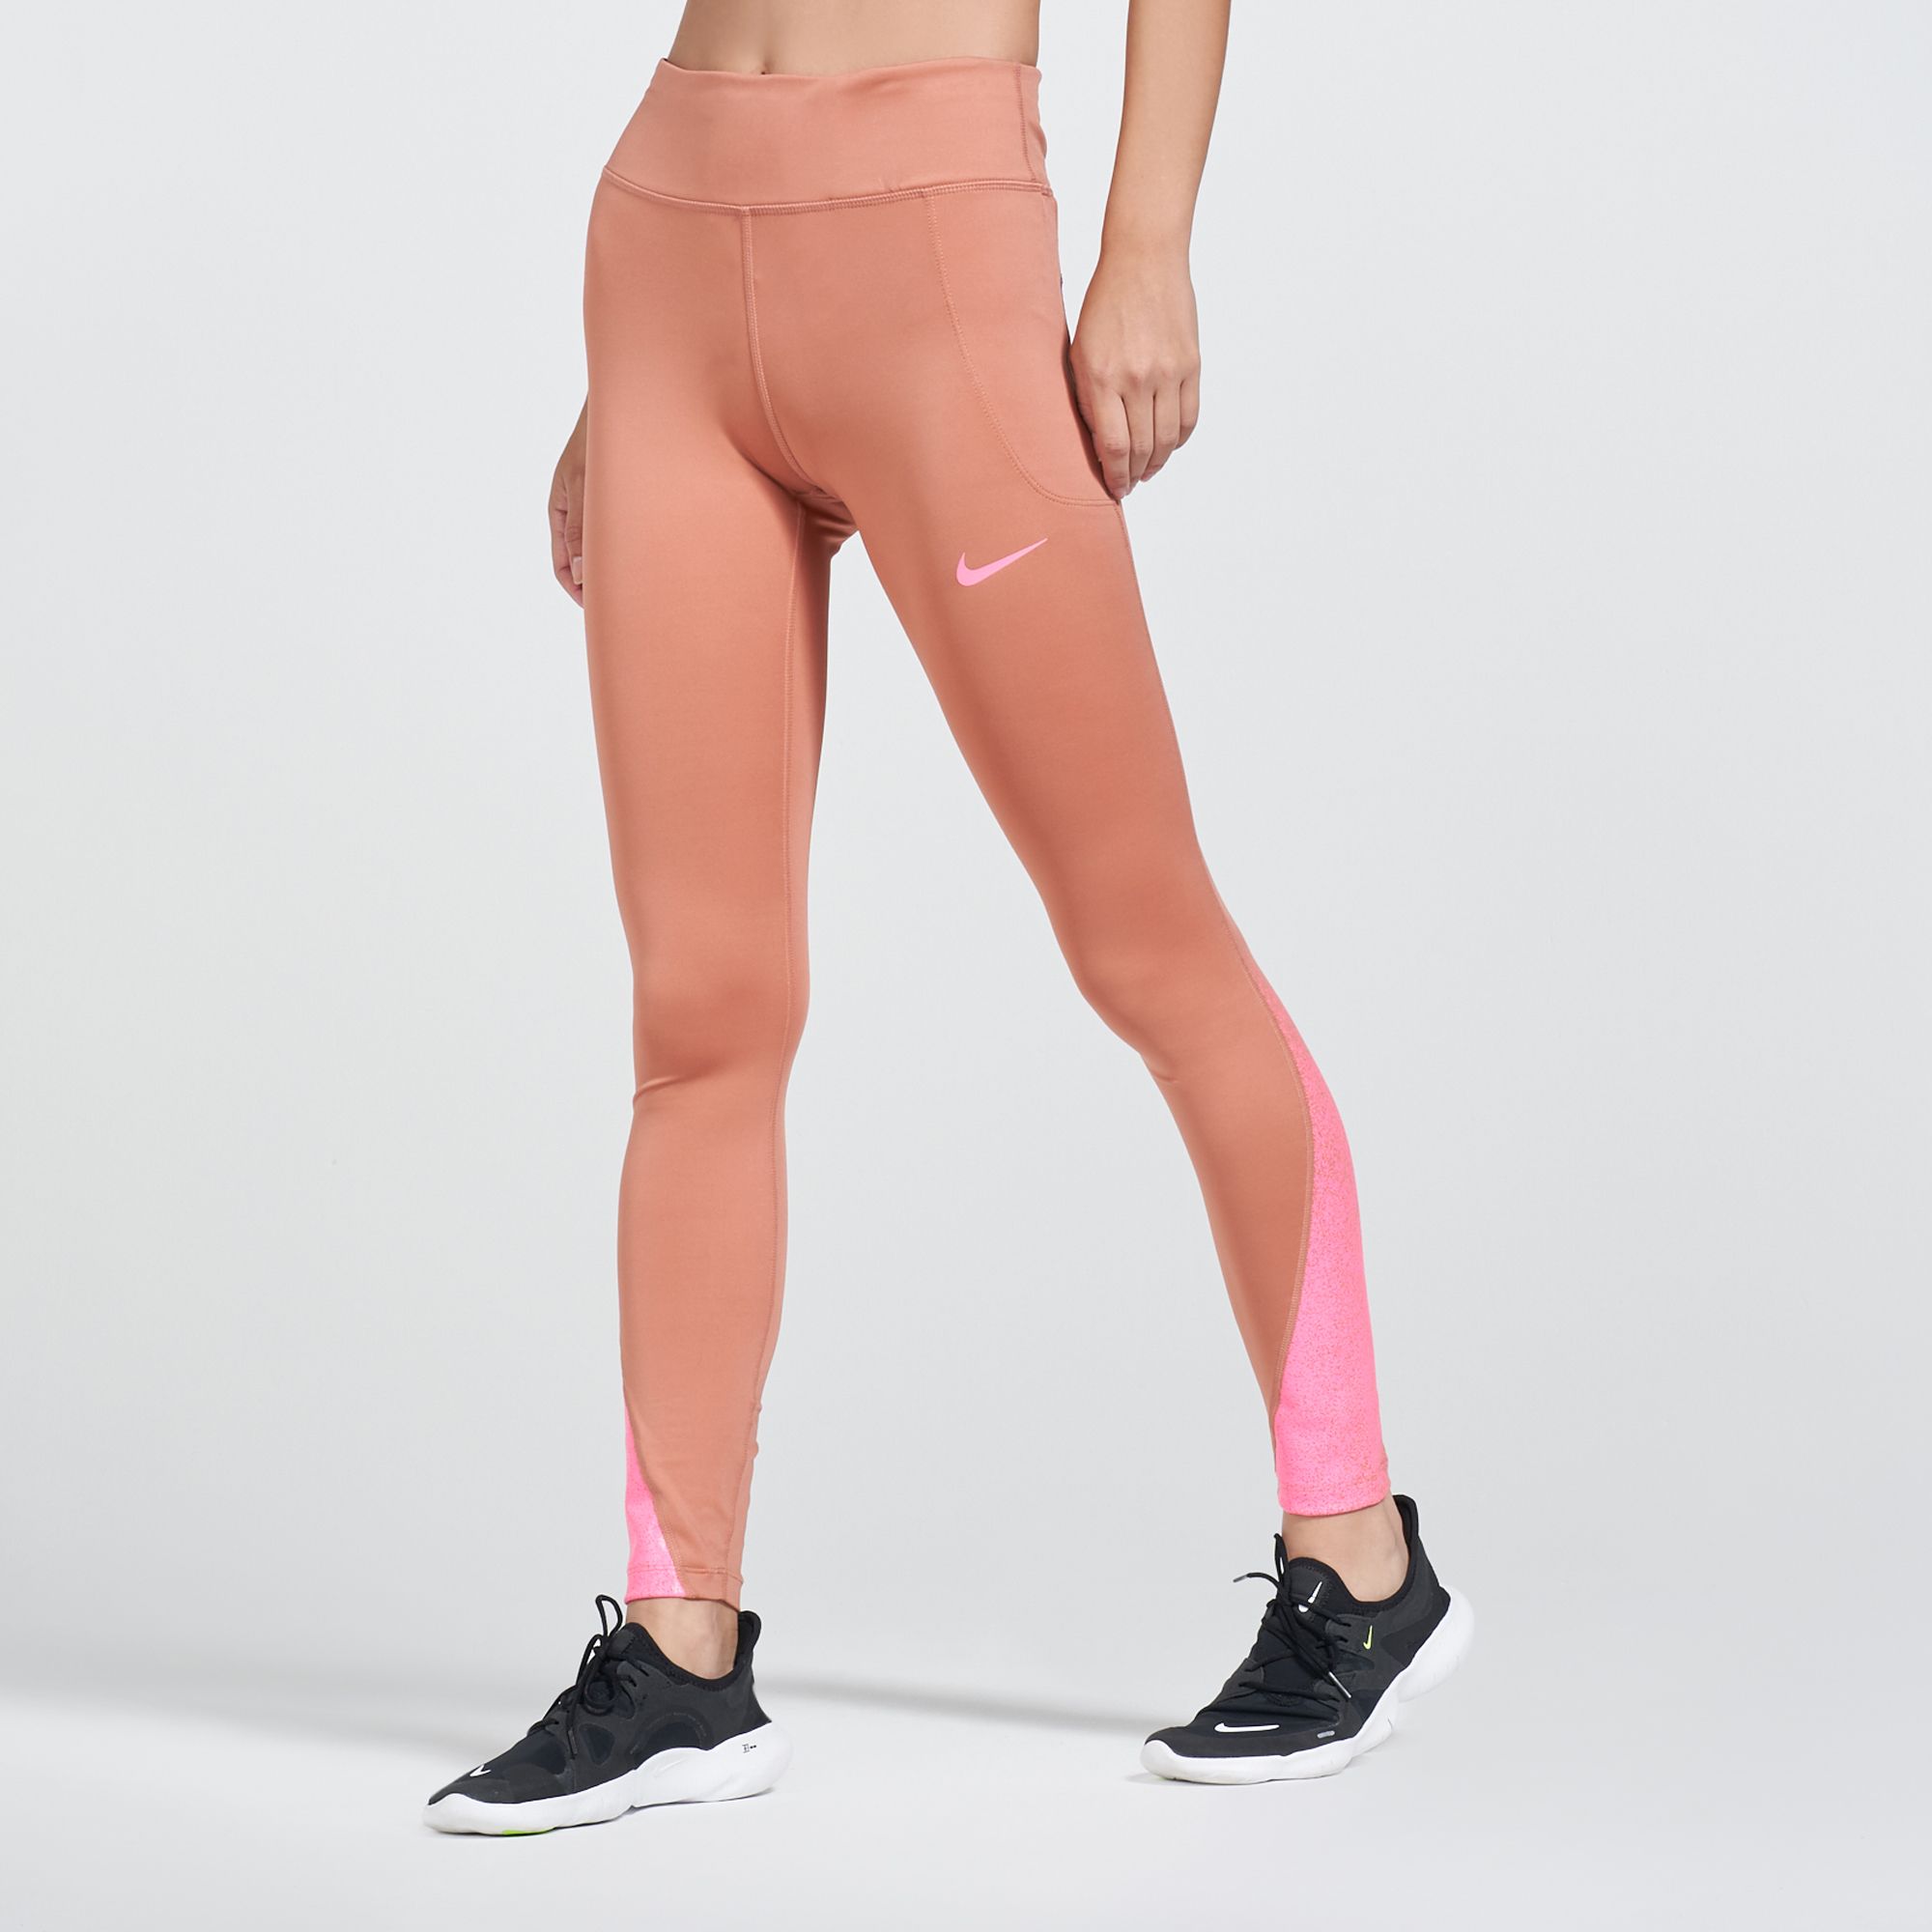 Nike Women's Fast Running Leggings